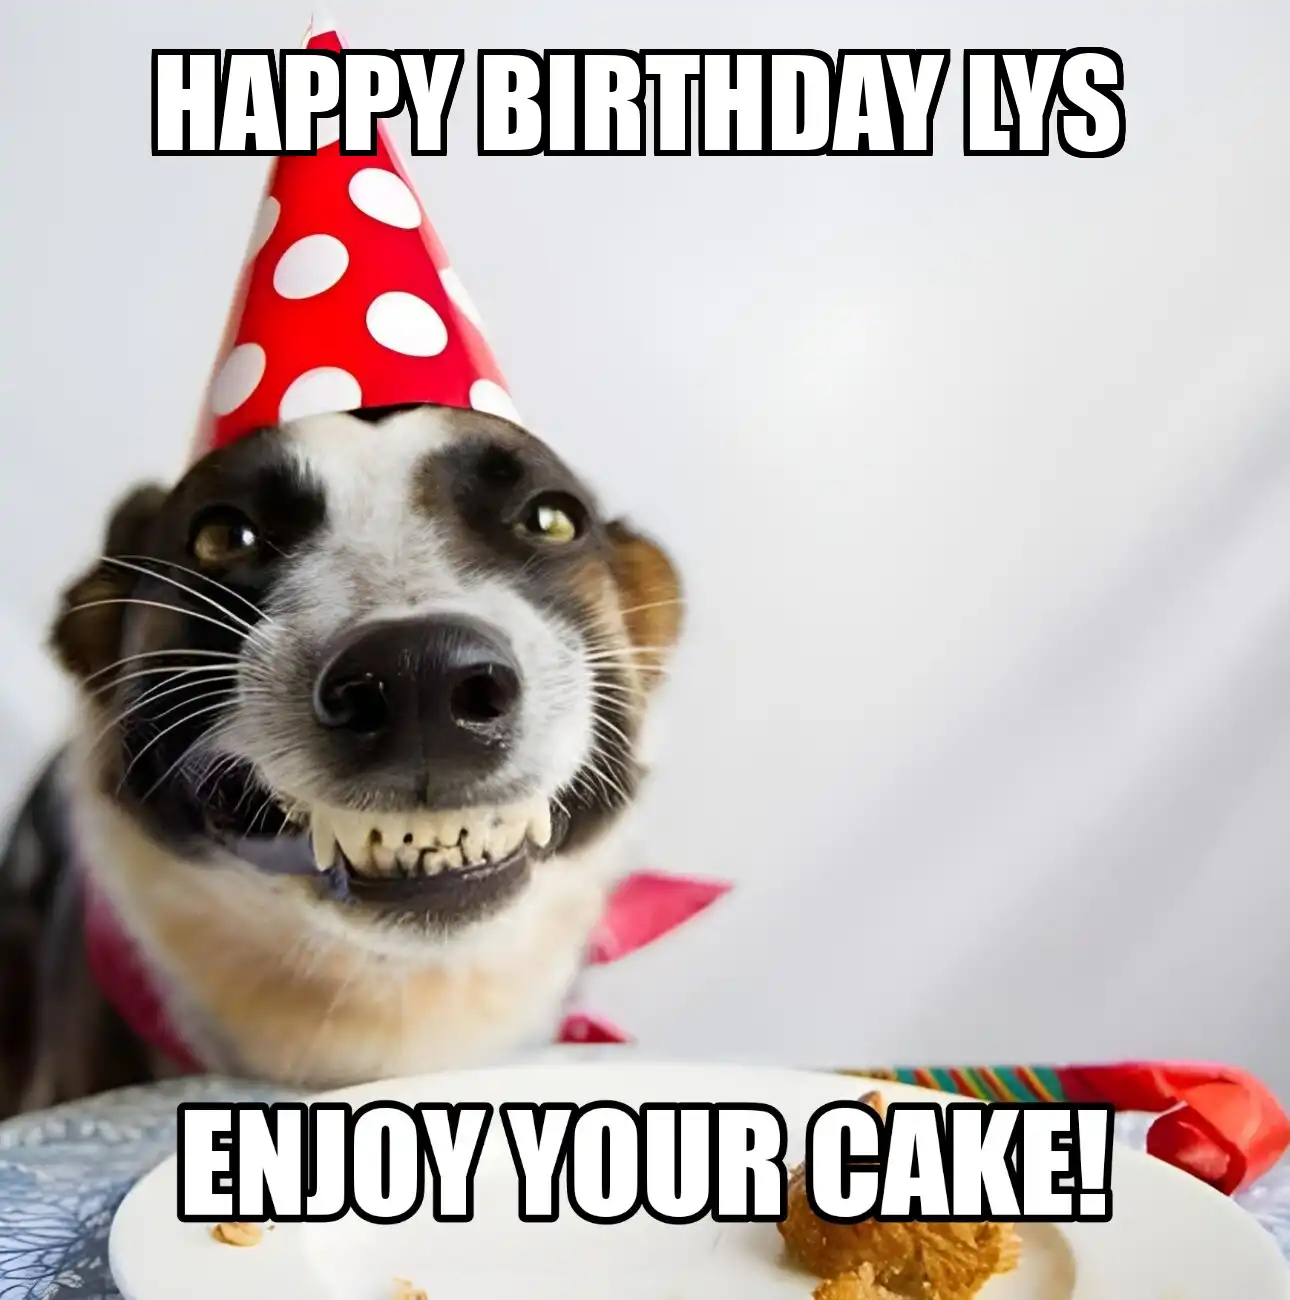 Happy Birthday Lys Enjoy Your Cake Dog Meme